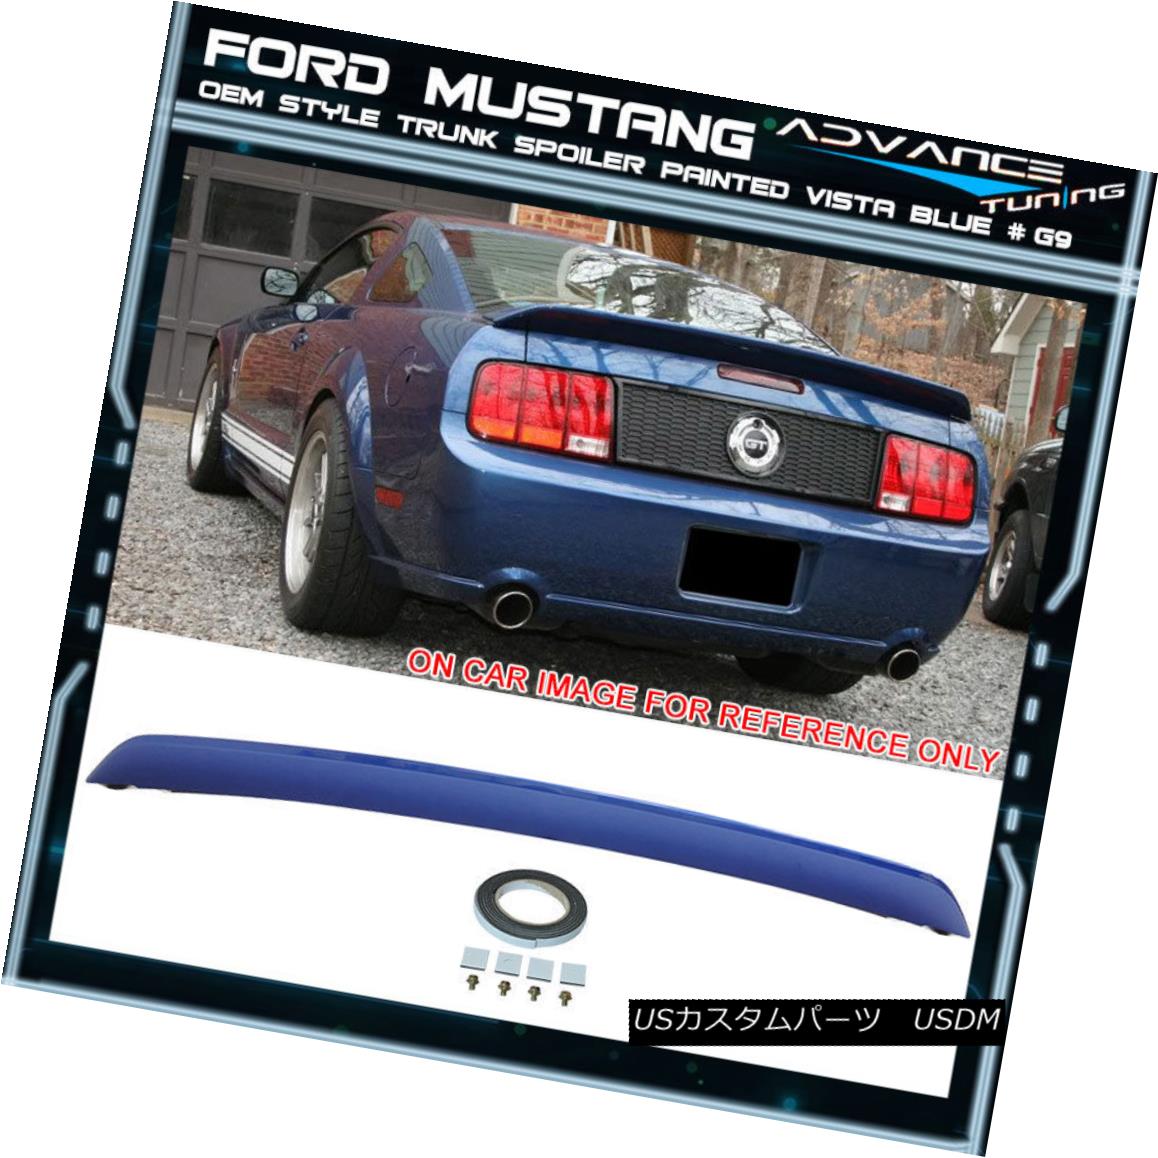 エアロパーツ 05-09 Ford Mustang OE Style Trunk Spoiler OEM Painted Color Vista Blue # G9 05-09フォードマスタングOEスタイルのトランクスポイラーOEM塗装カラービスタブルー＃G9